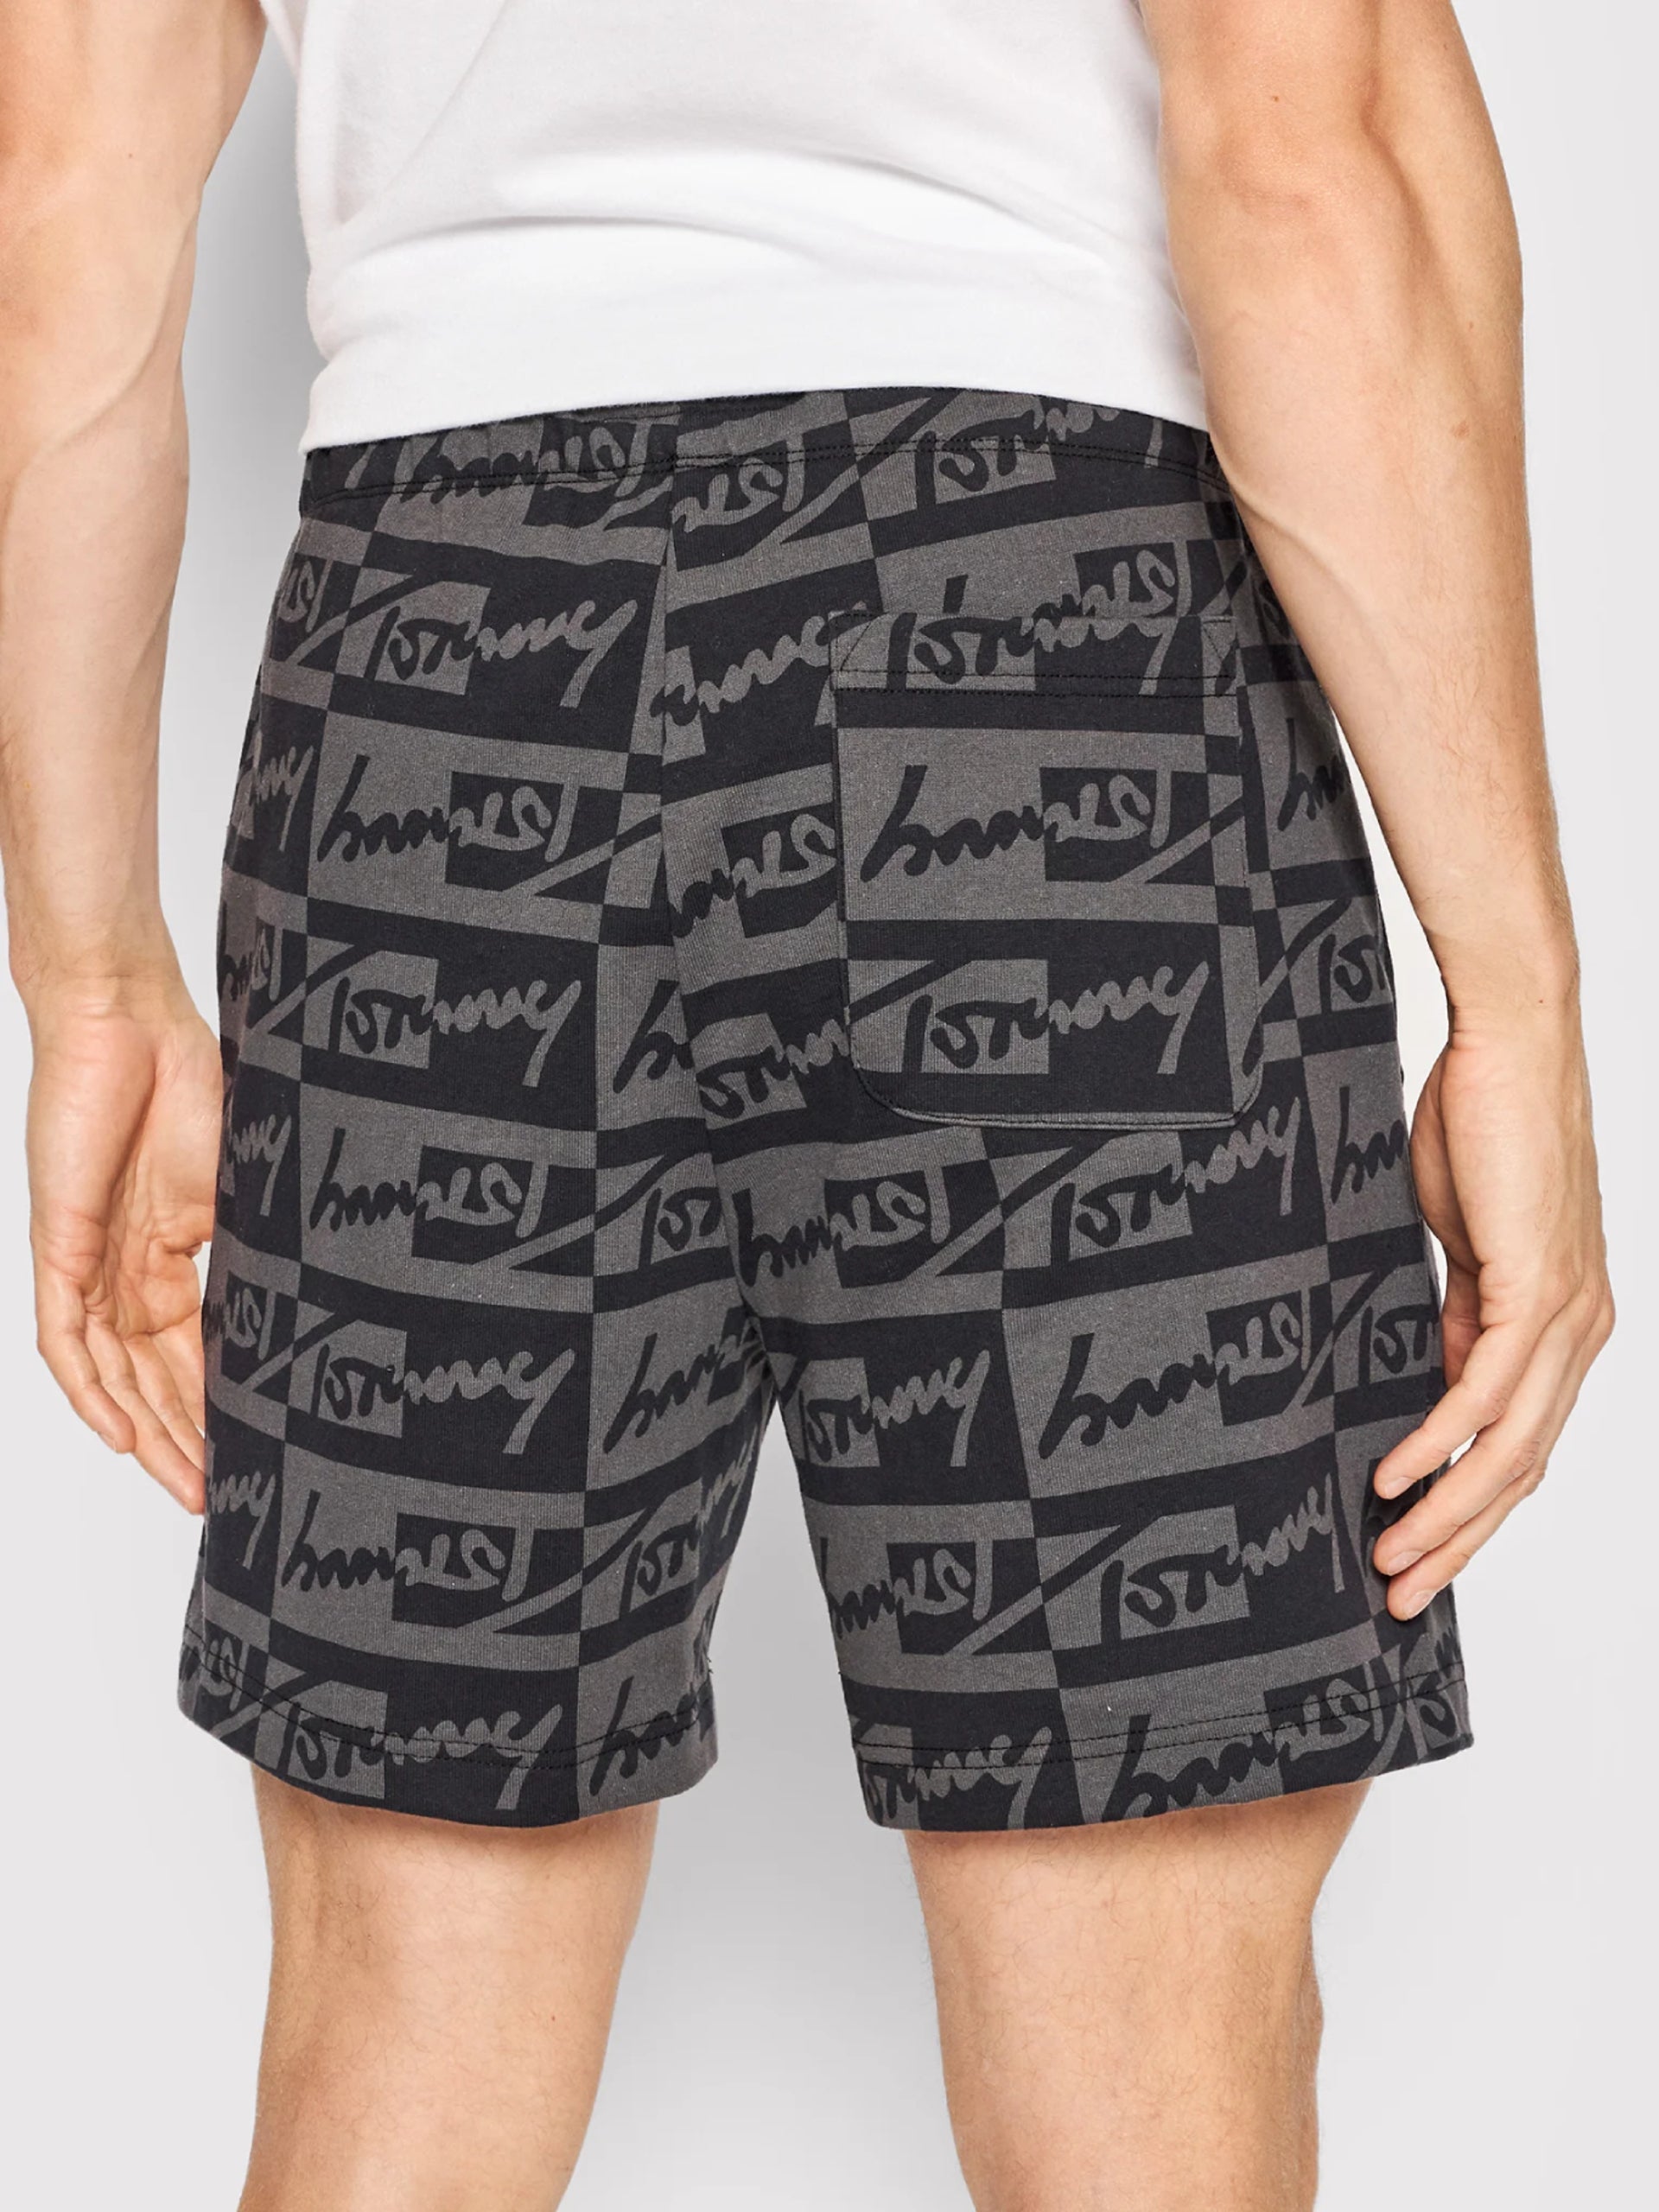 Tommy Hilfiger men's cotton shorts